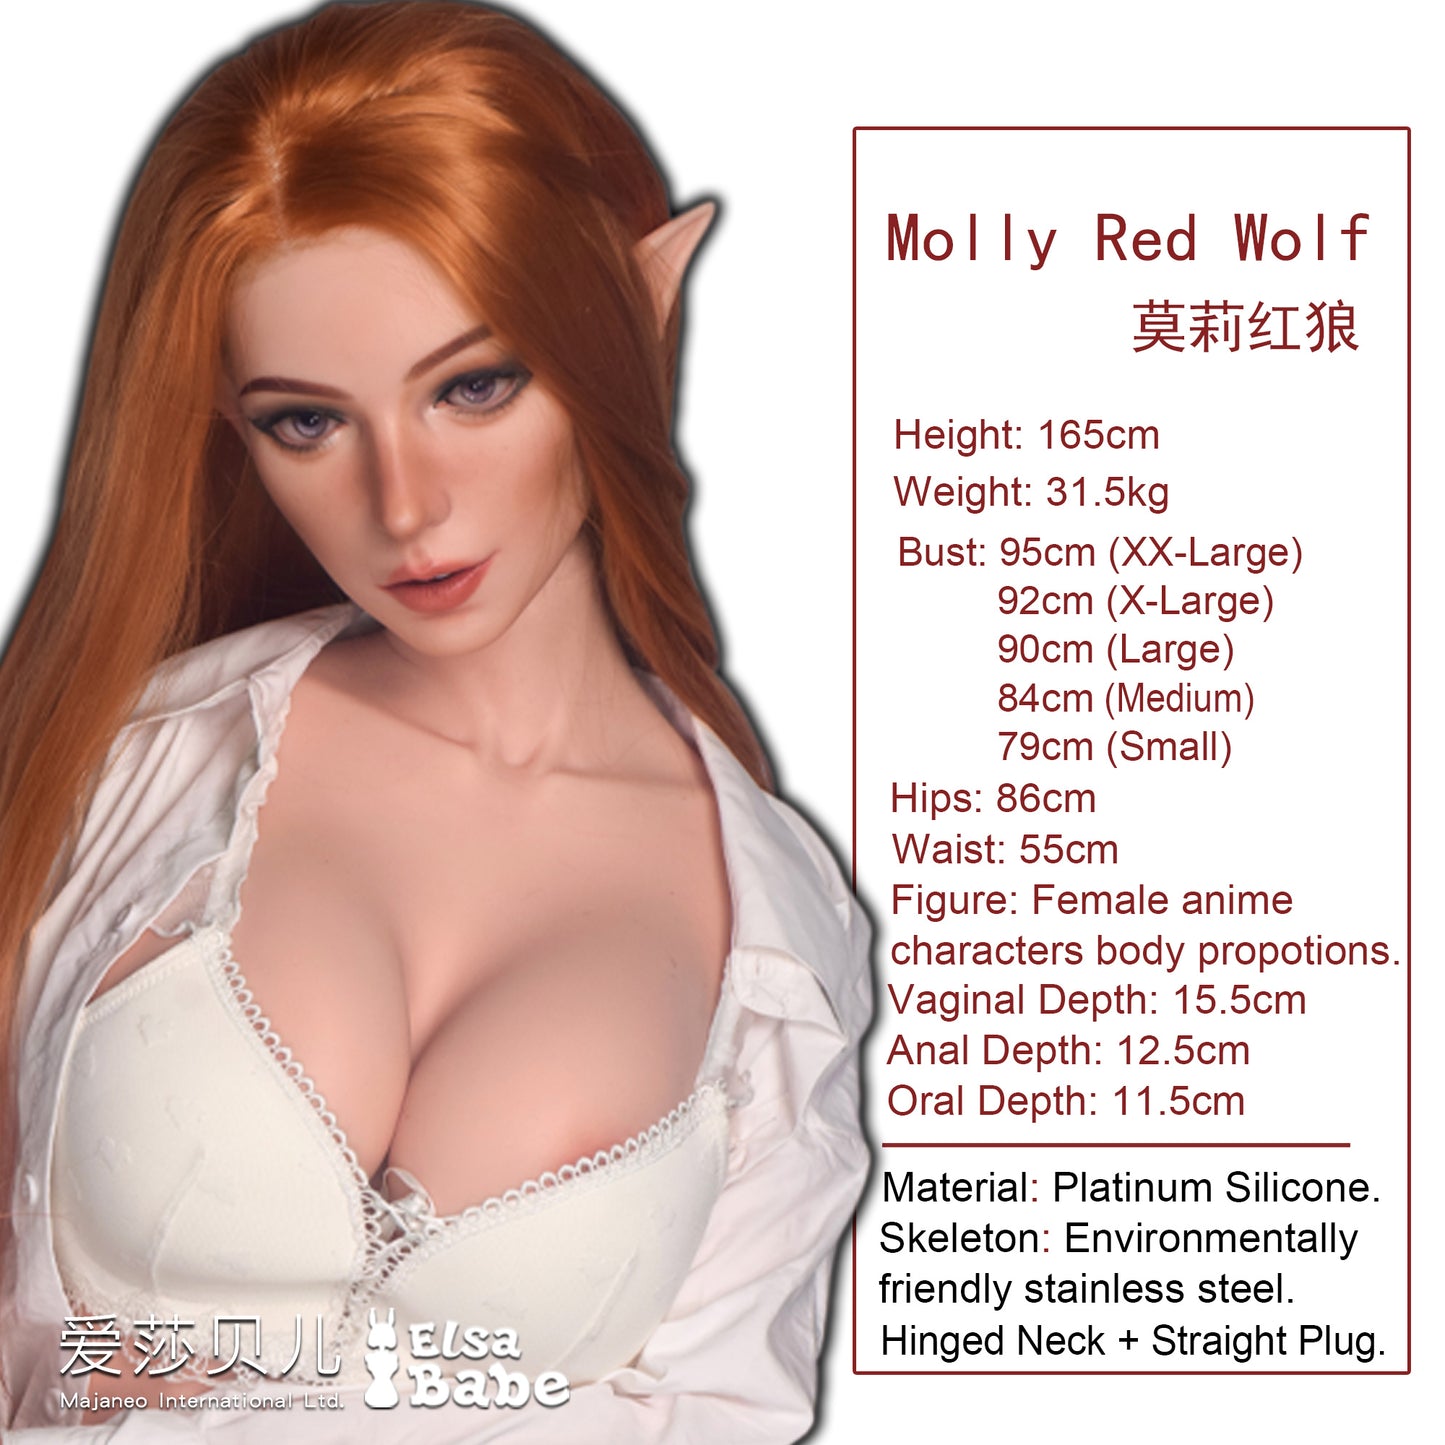 ElsaBabe PornStar Series- MollyRedWolf 165cm Pechos grandes con gel suave Platino Silicona Love Doll